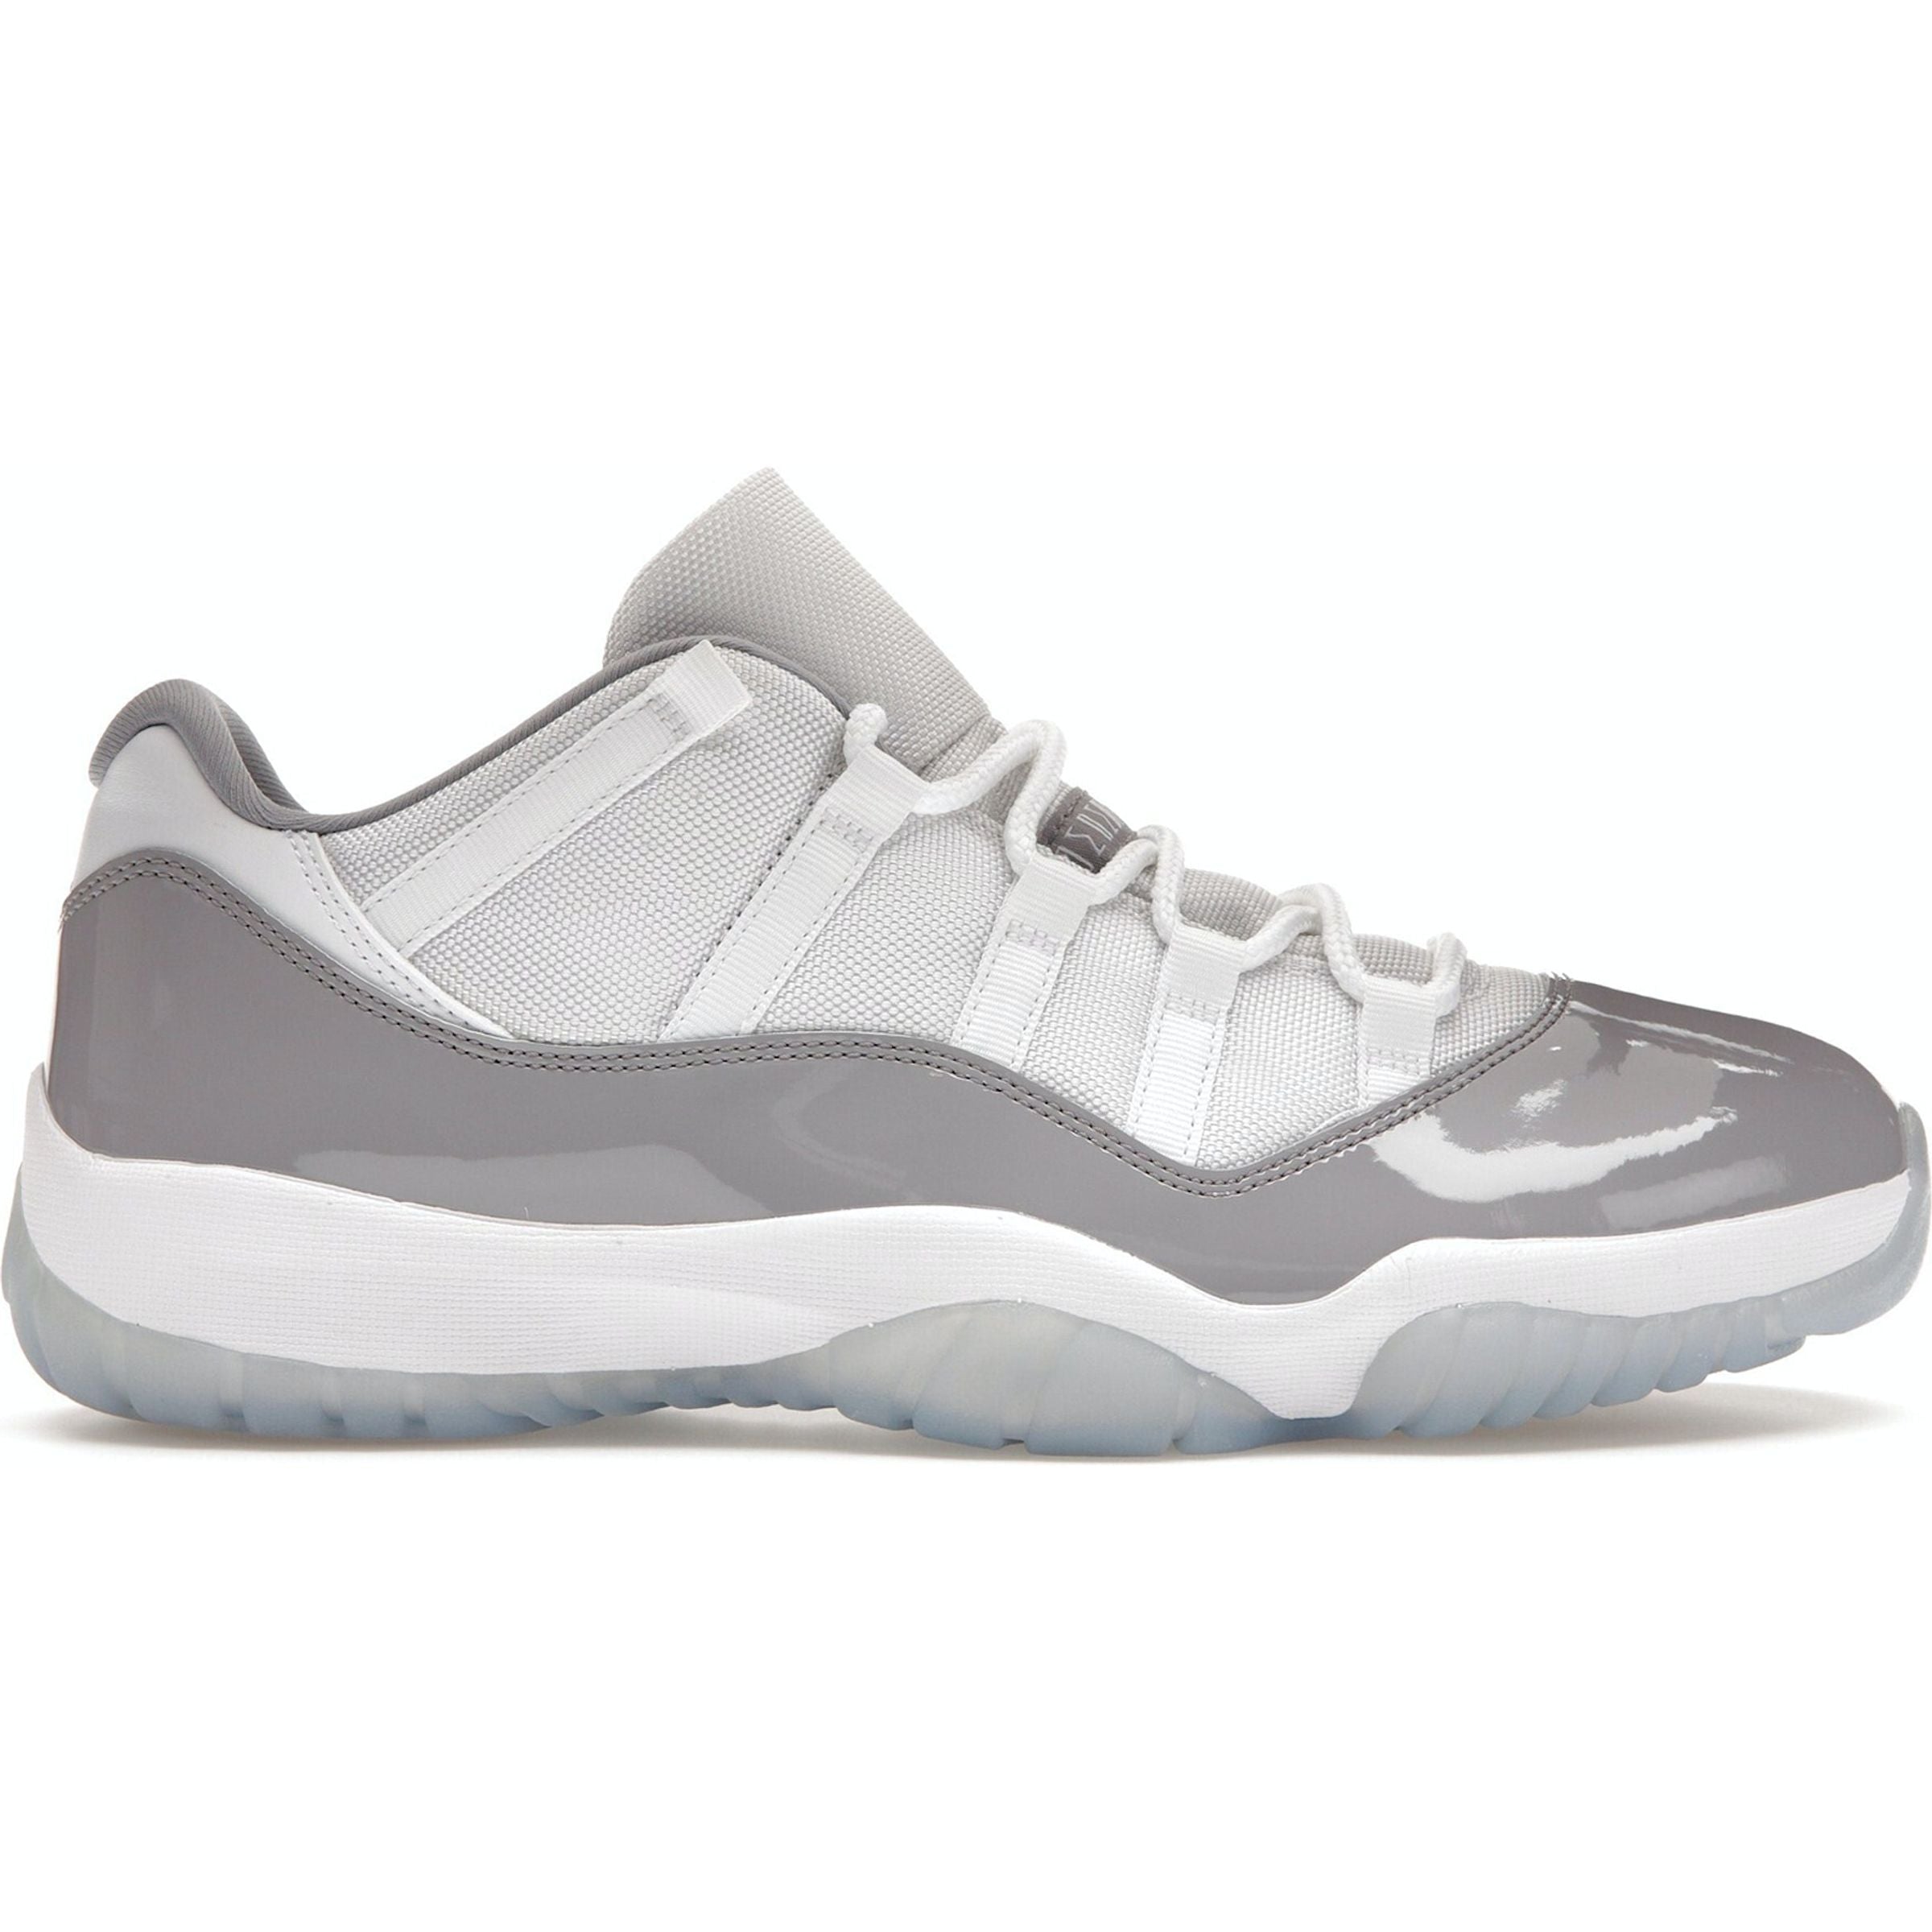 Nike - Jordan 11 Low Cement Grey